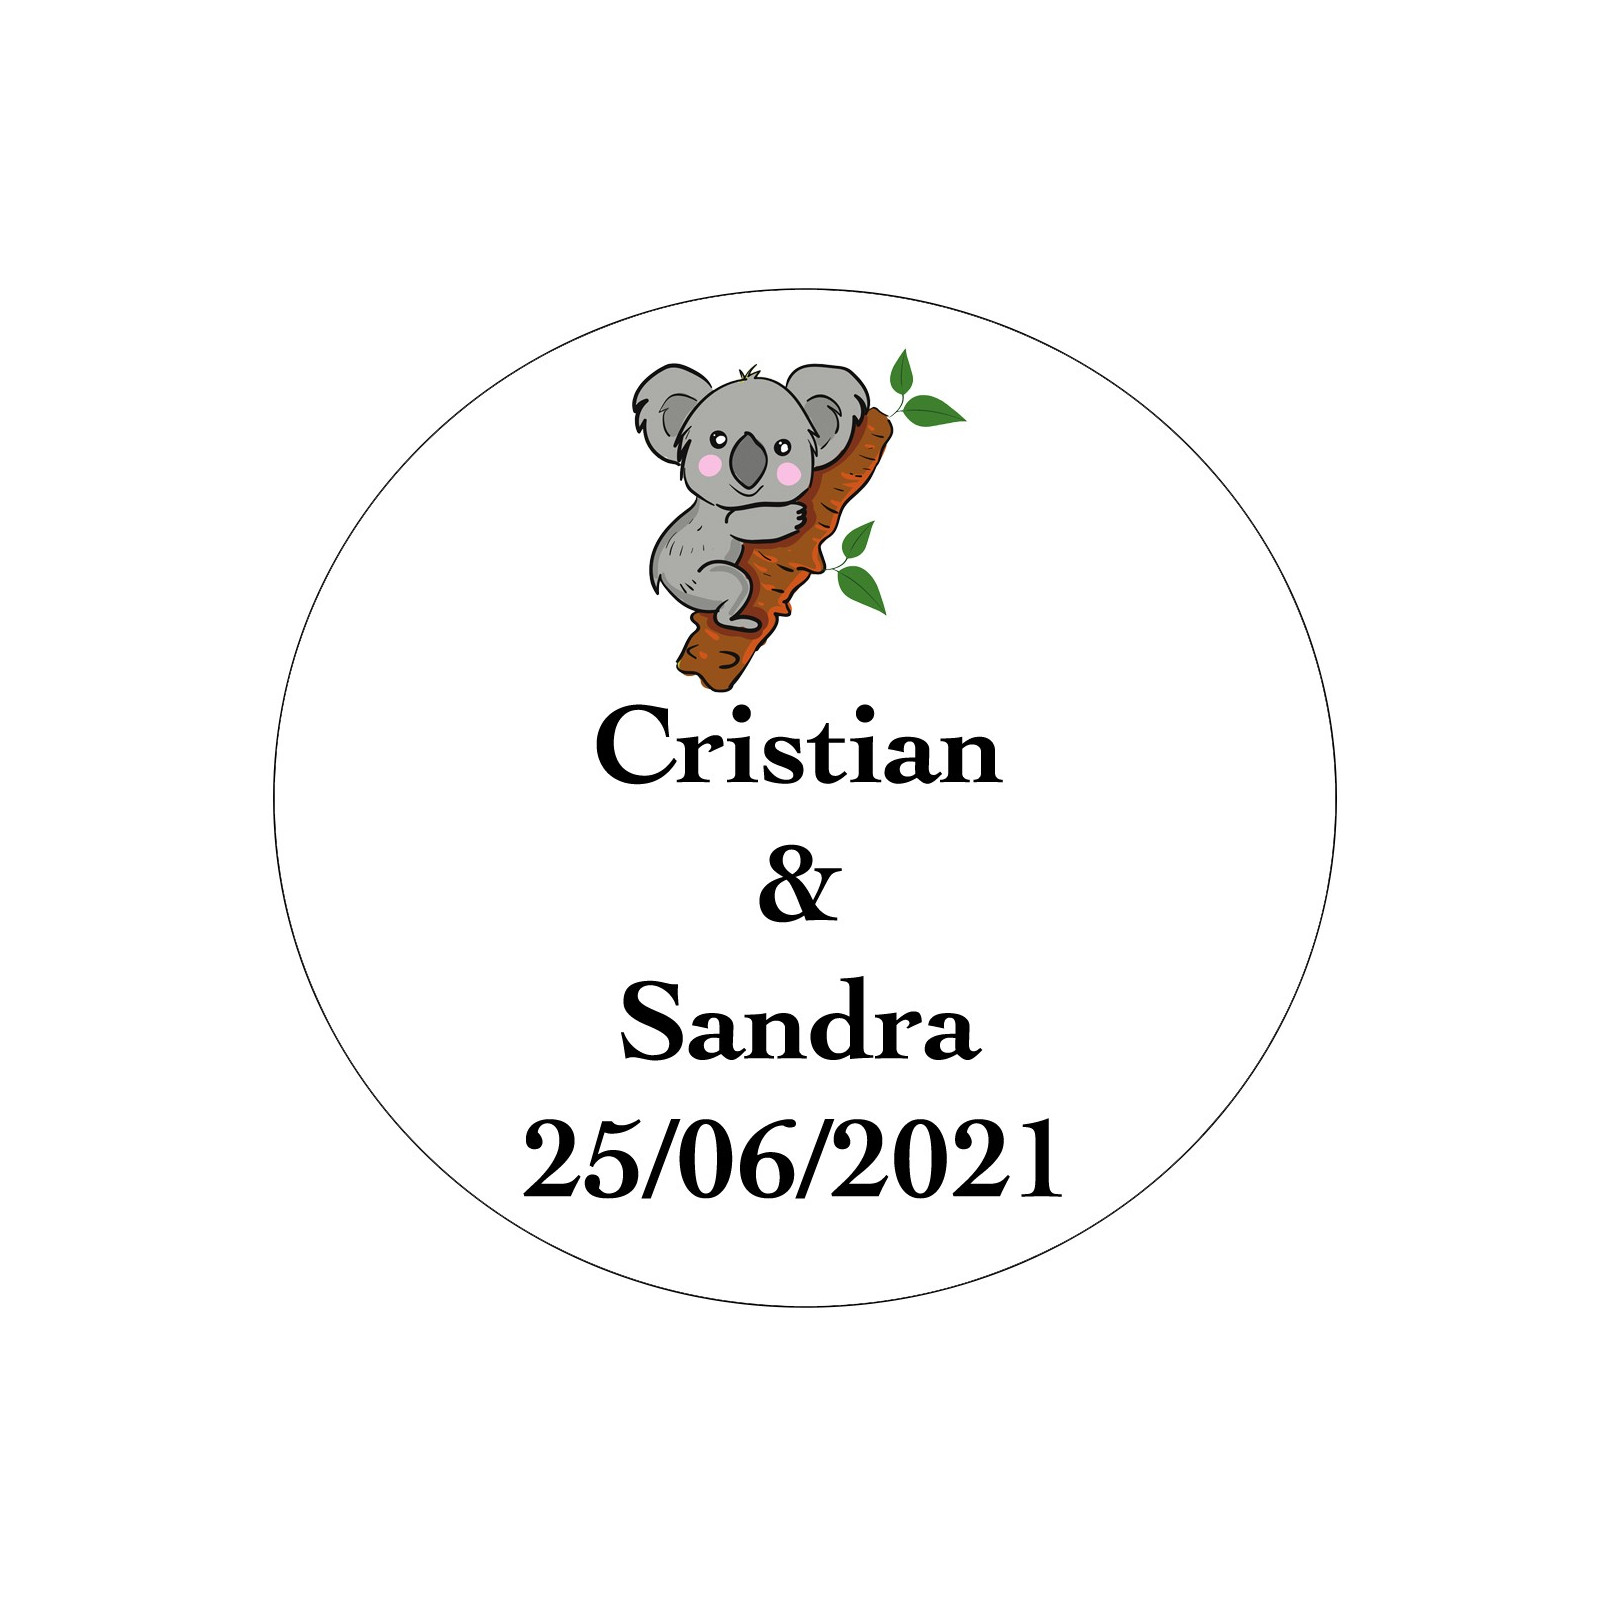 Etiqueta do casamento do koala personalizada com nomes e data